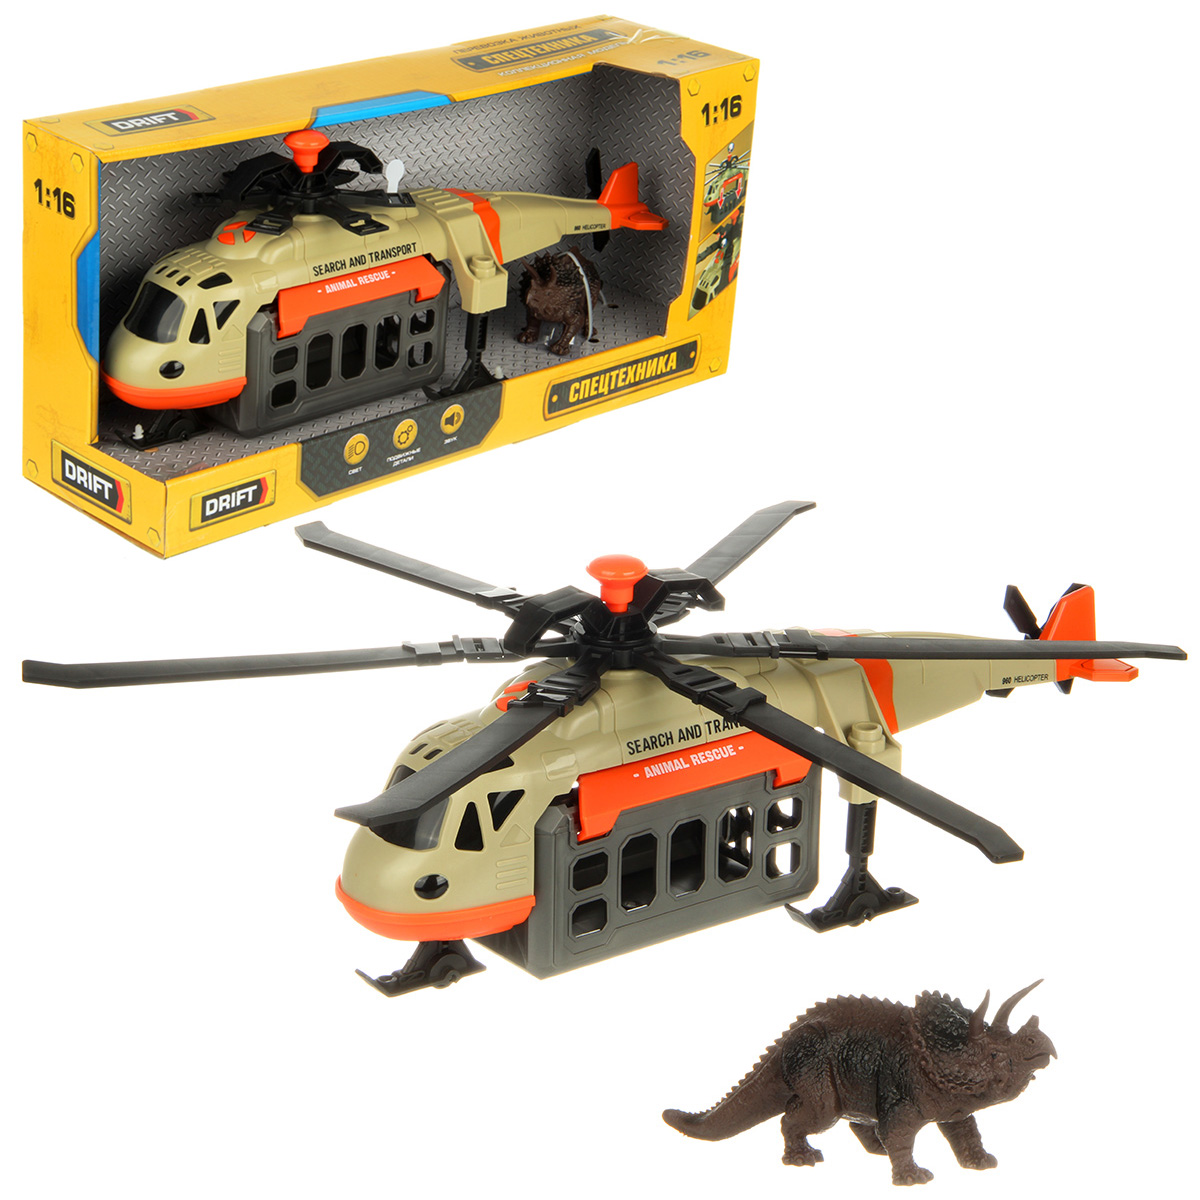 Вертолет игрушечный Drift Перевозка животных 1:16 130978 drift вертолет fire and rescque helicopter 1 16